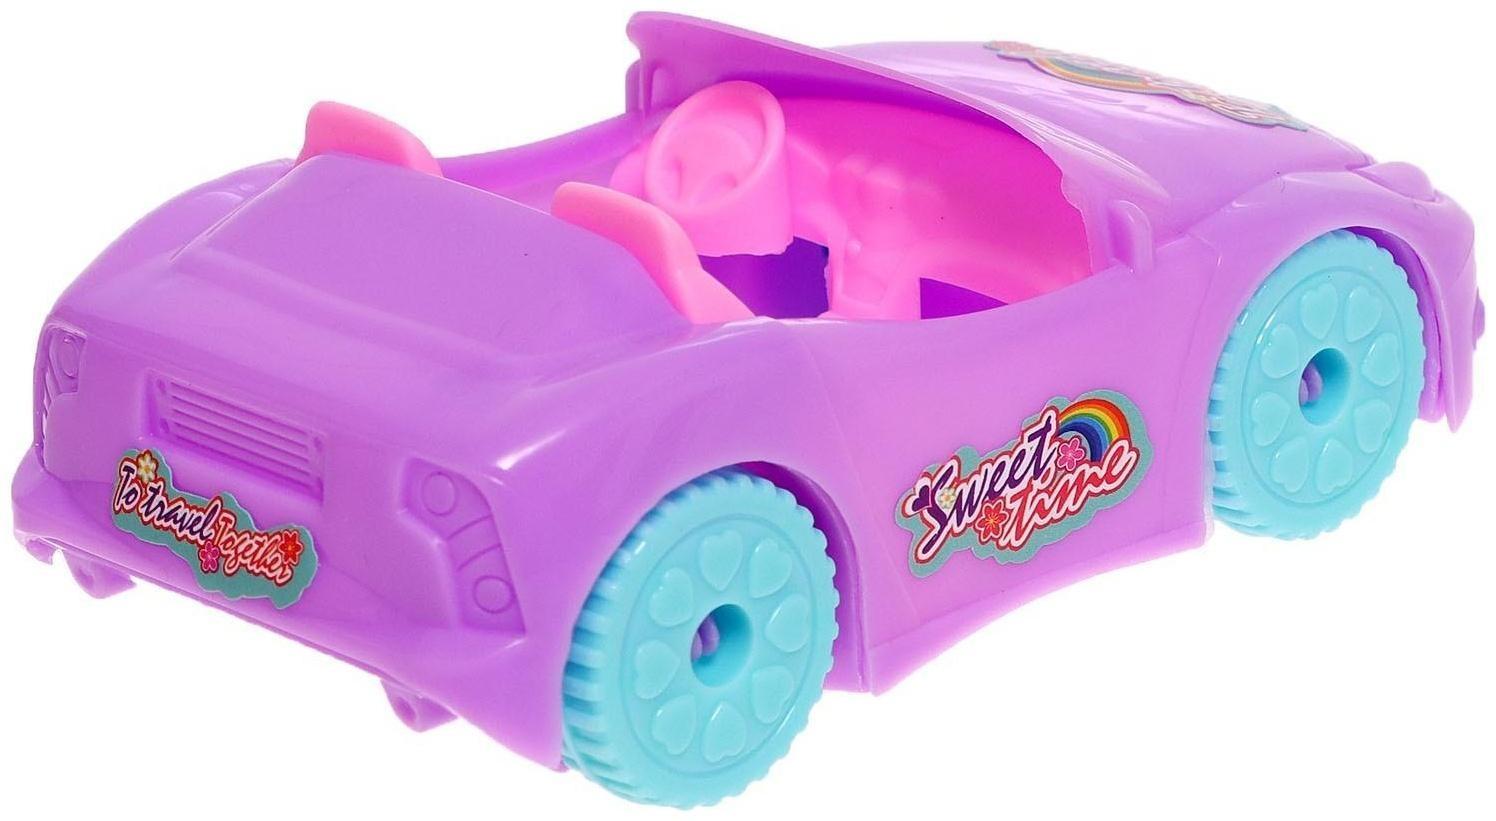 Кукла малышка «Кэтти» с машиной и аксессуарами, цвета МИКС